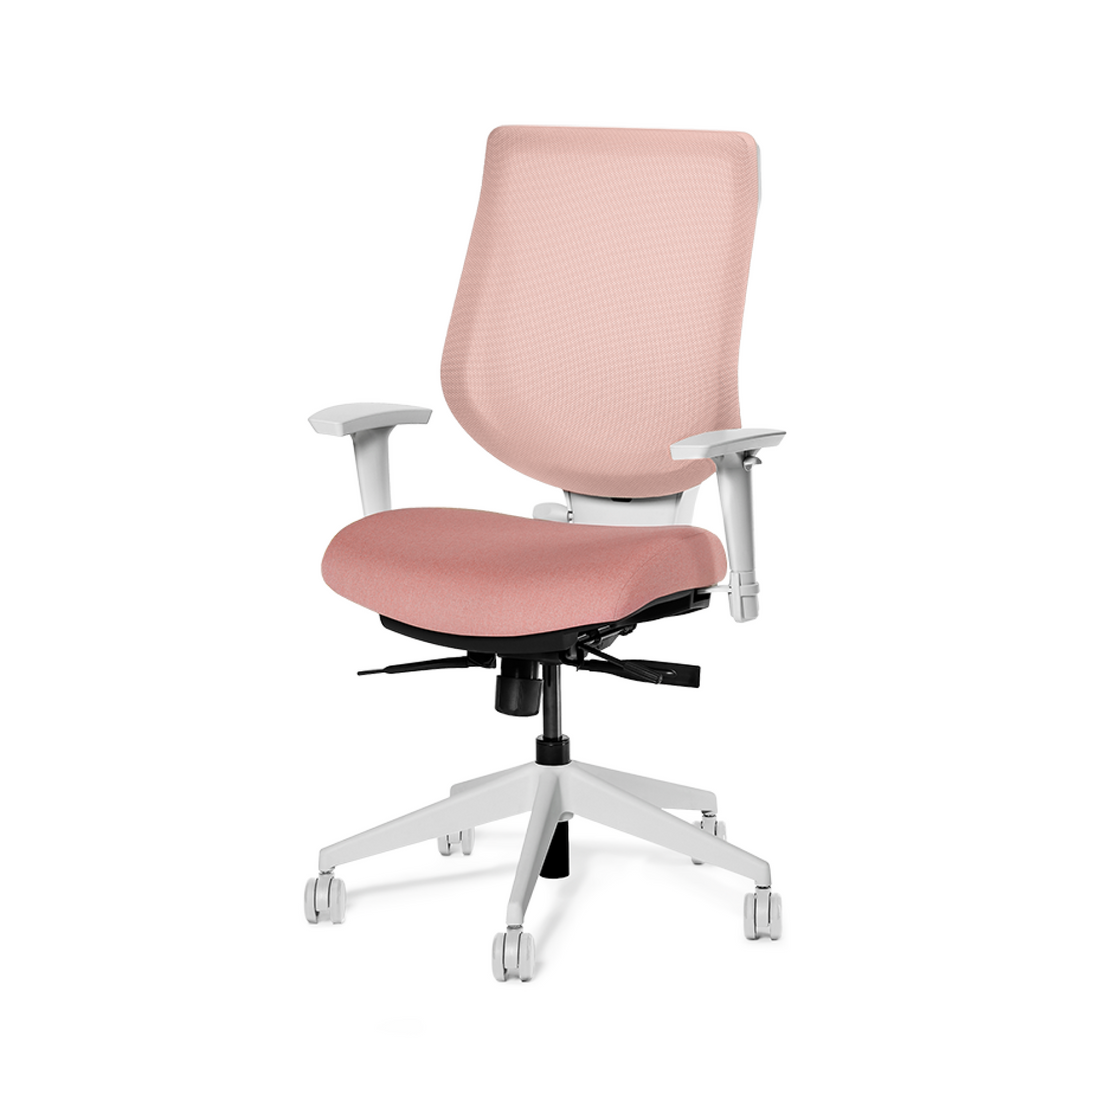 La chaise ergonomique YouToo